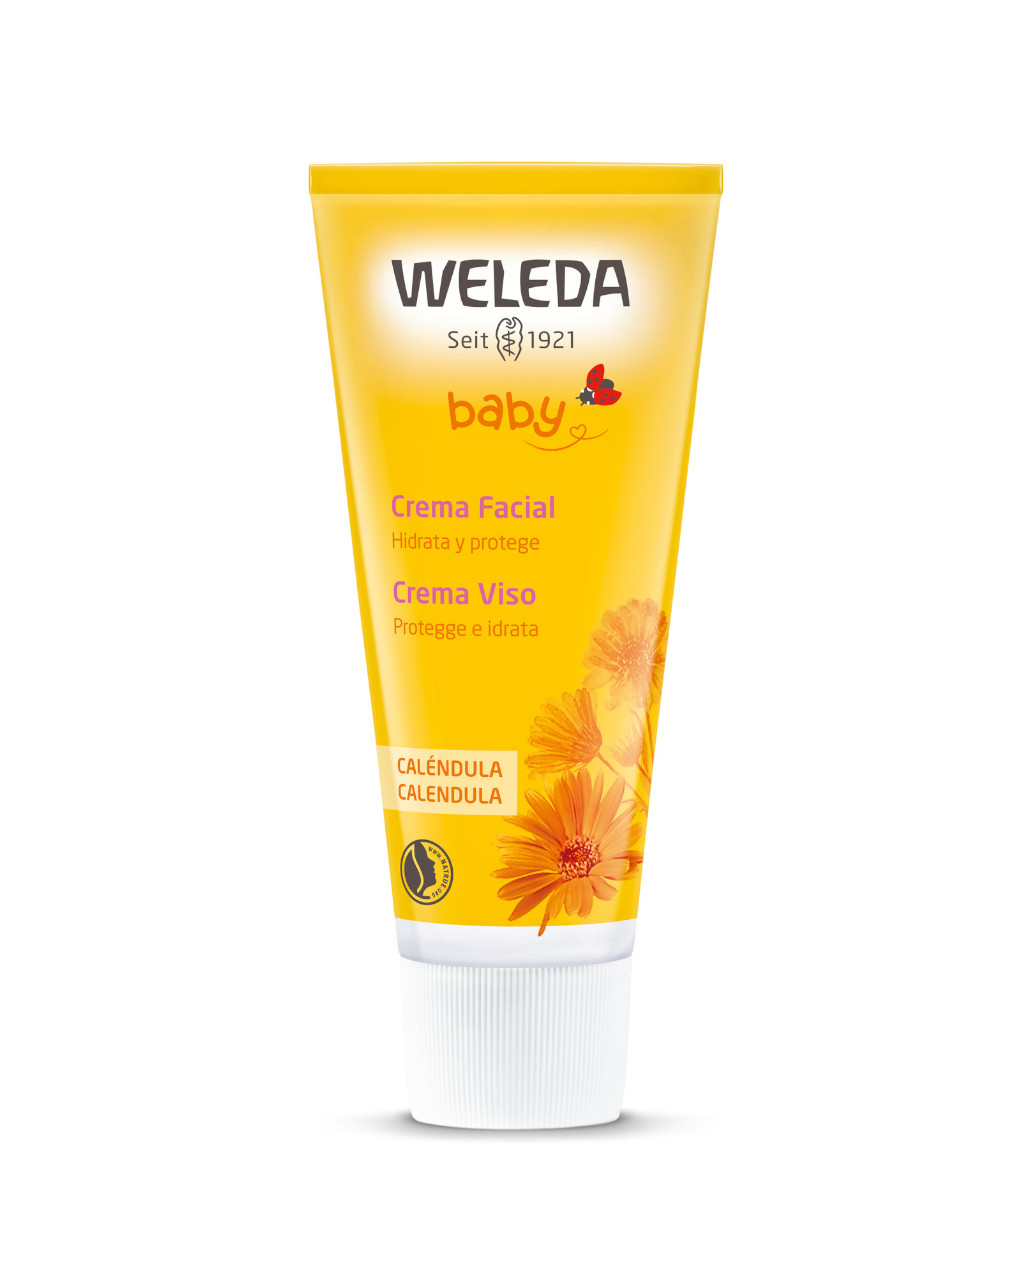 Crema facial de caléndula weleda - Weleda